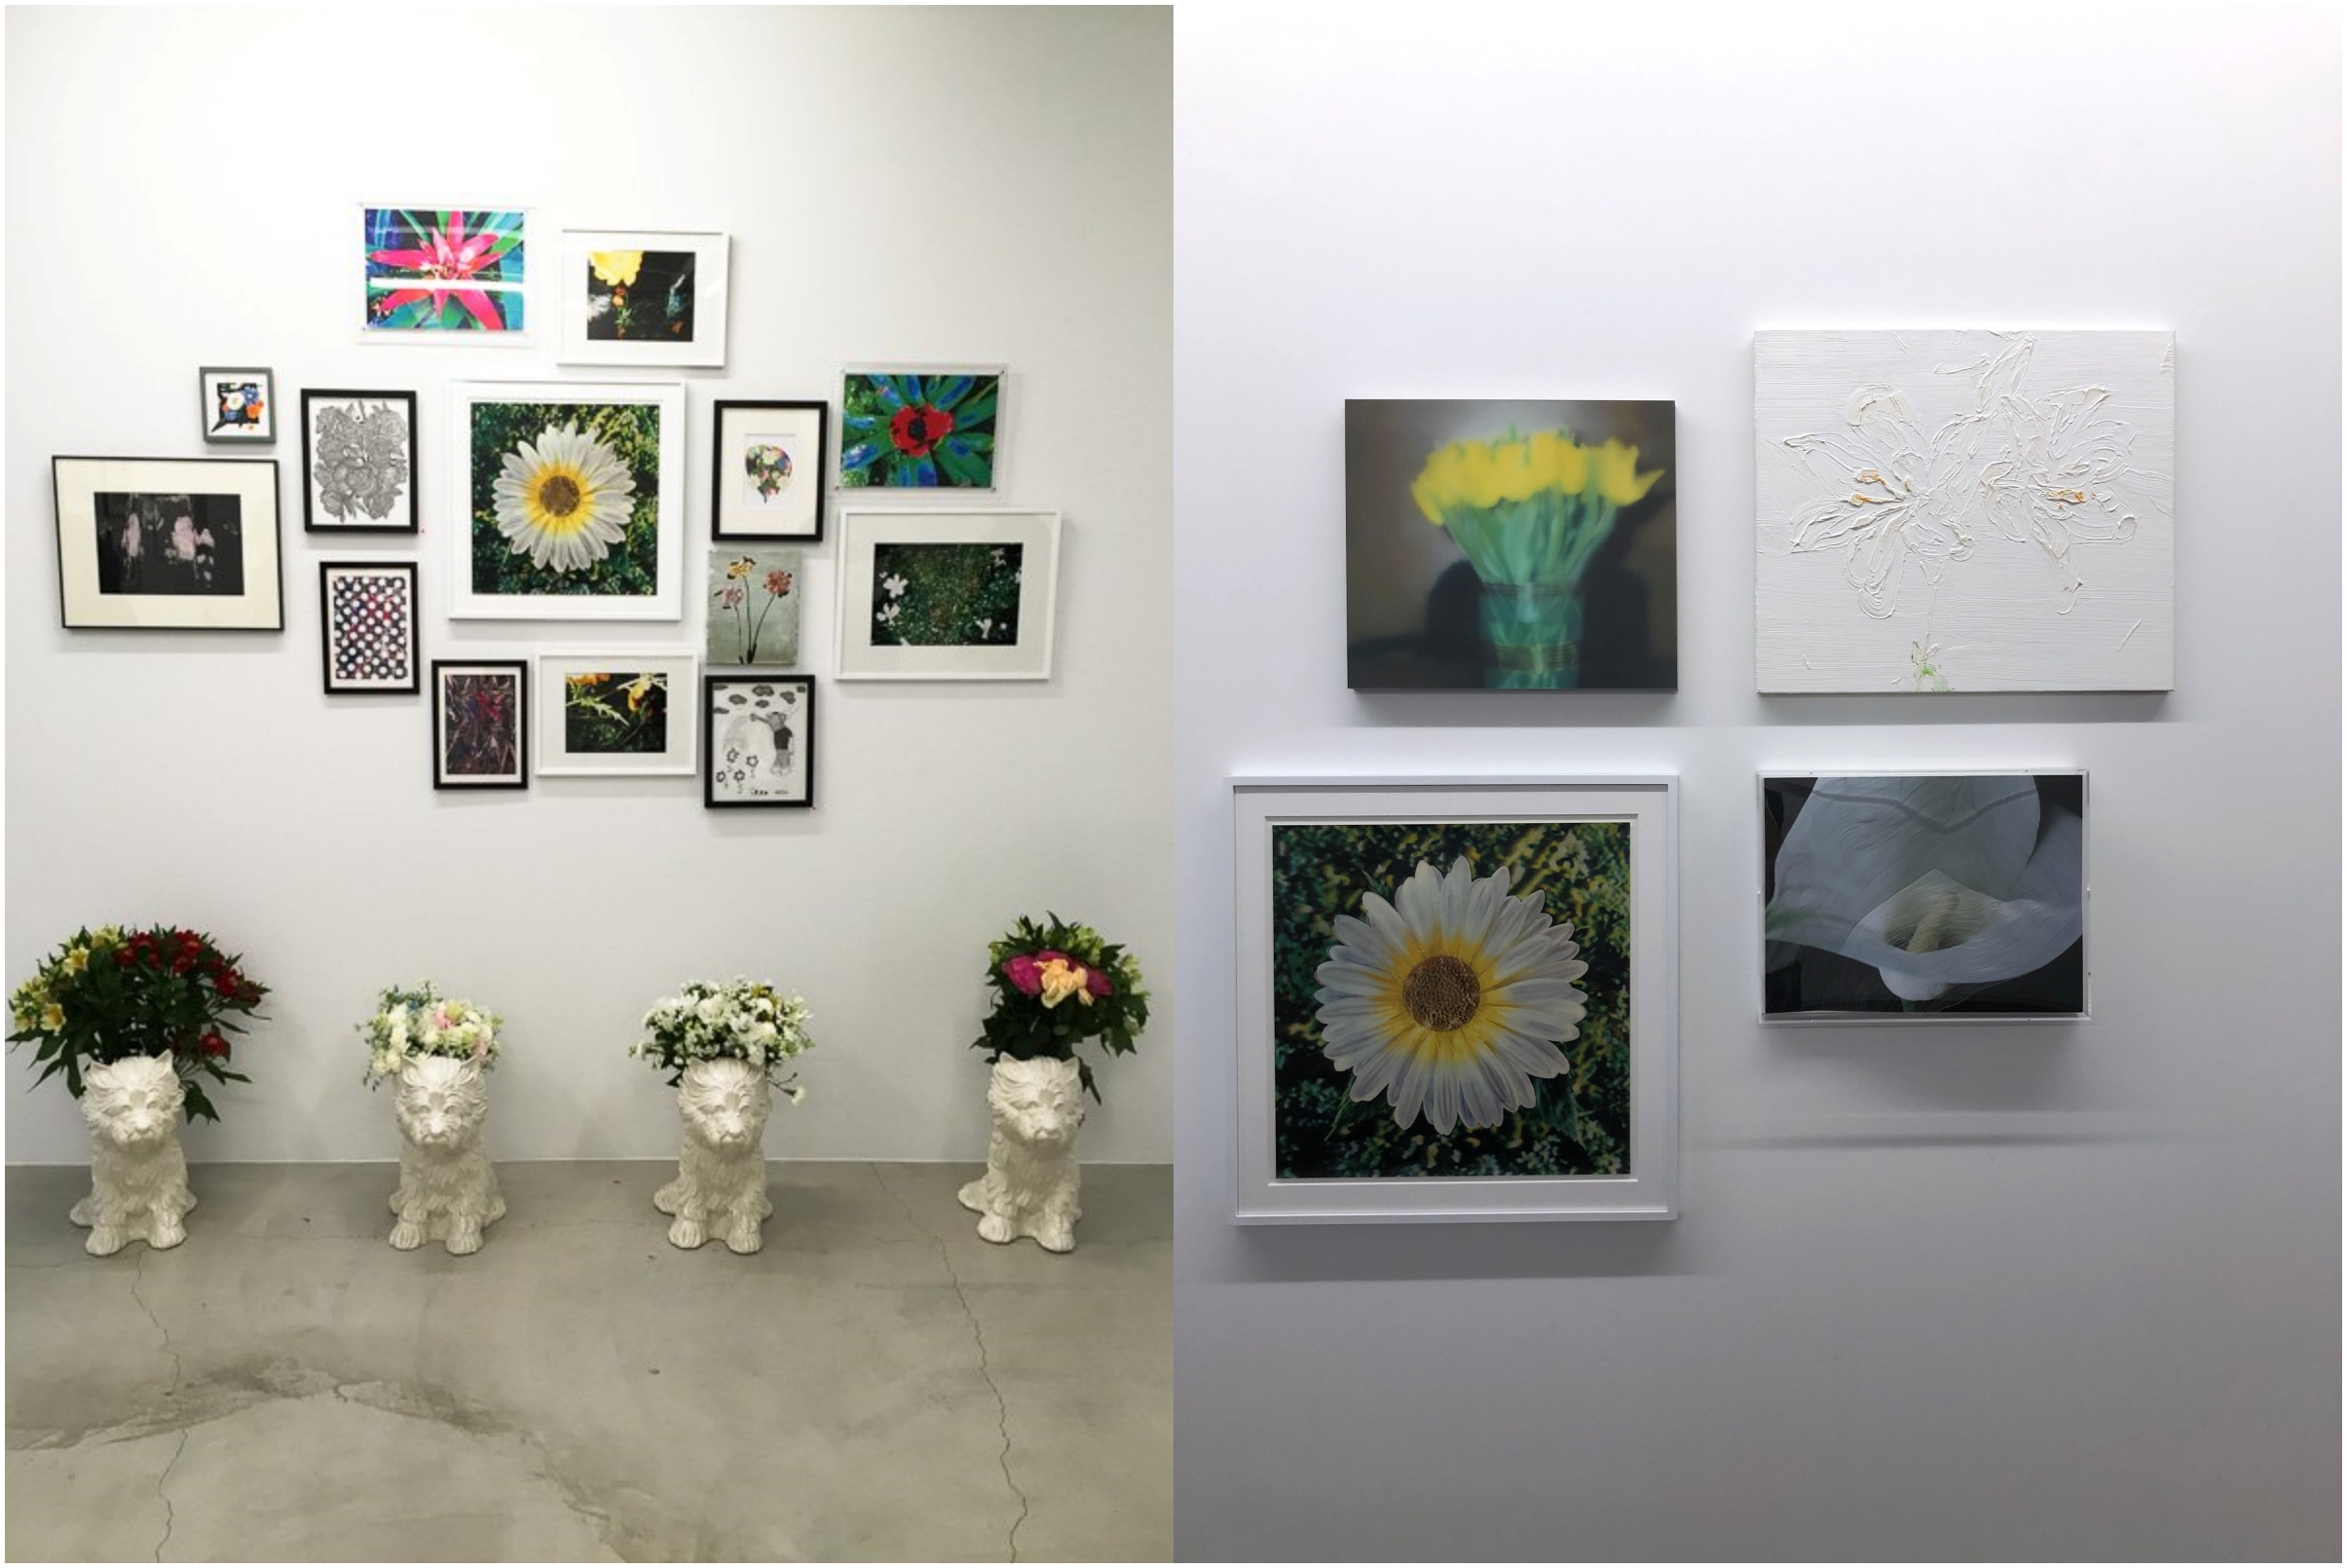 2019년 오사카 갤러리에서 진행된 학생들과의 전시 'Flower Huddle', 여기엔 후지와라 씨의 사적 소장품(左)들도 함께 전시가 되었어요.